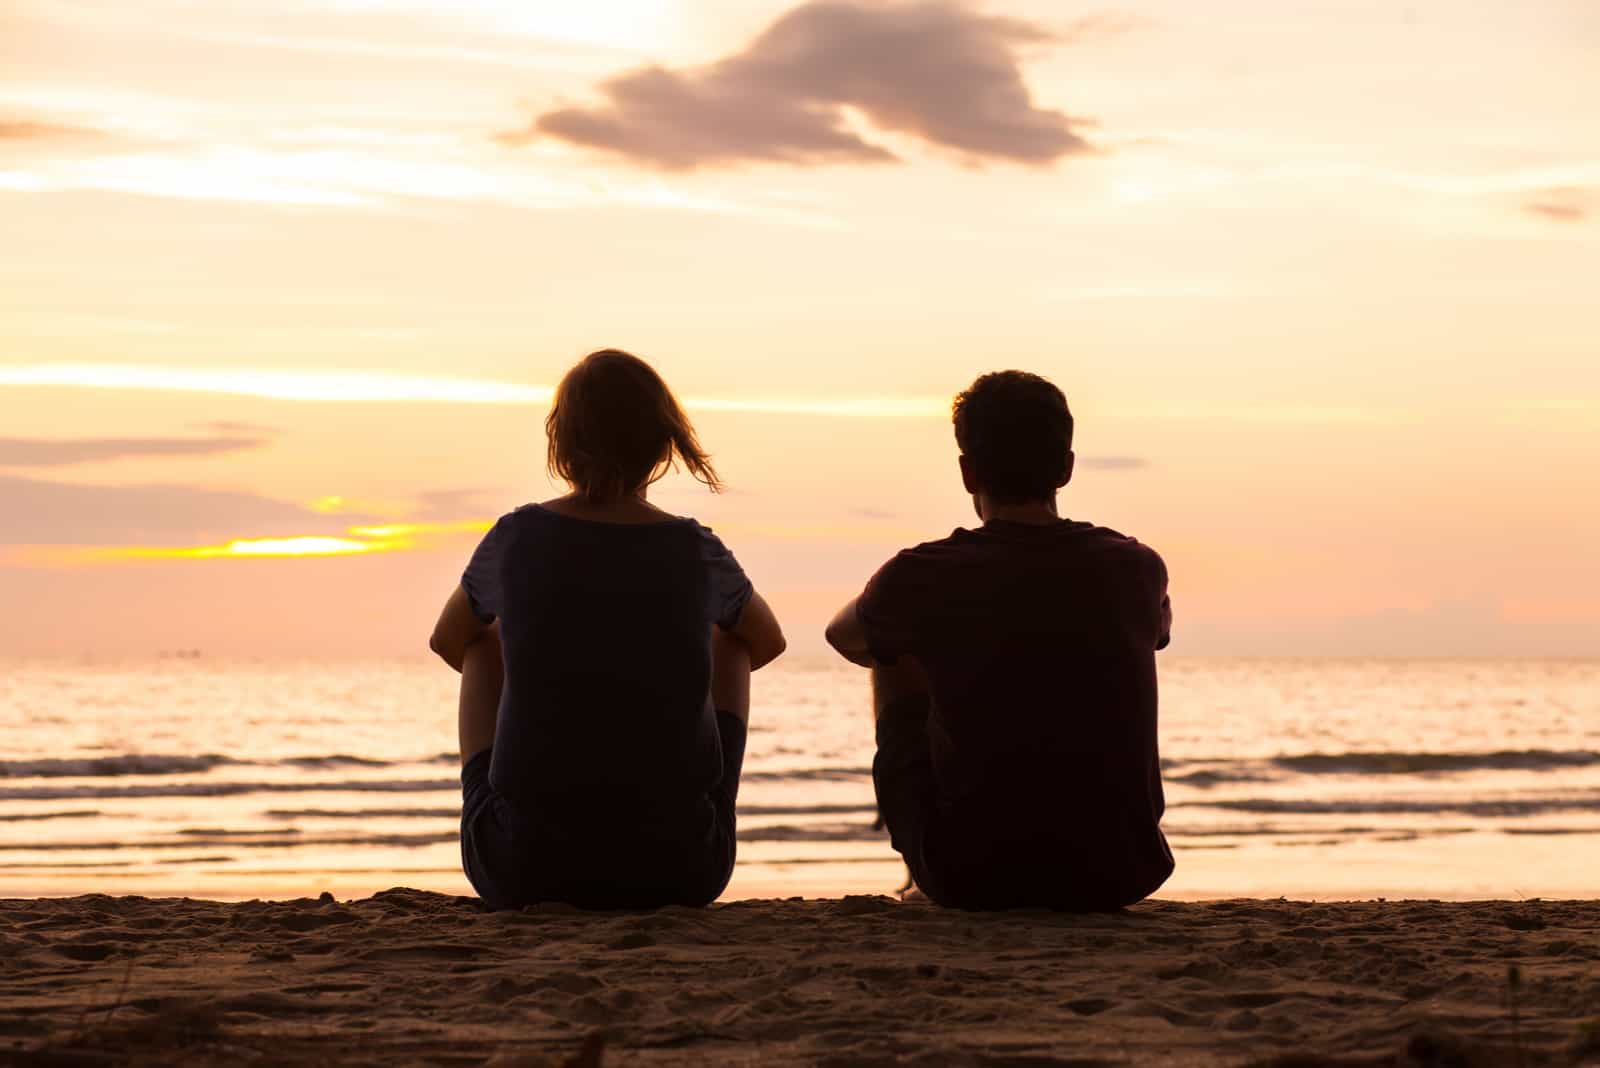 due persone sedute sulla sabbia a guardare l'oceano